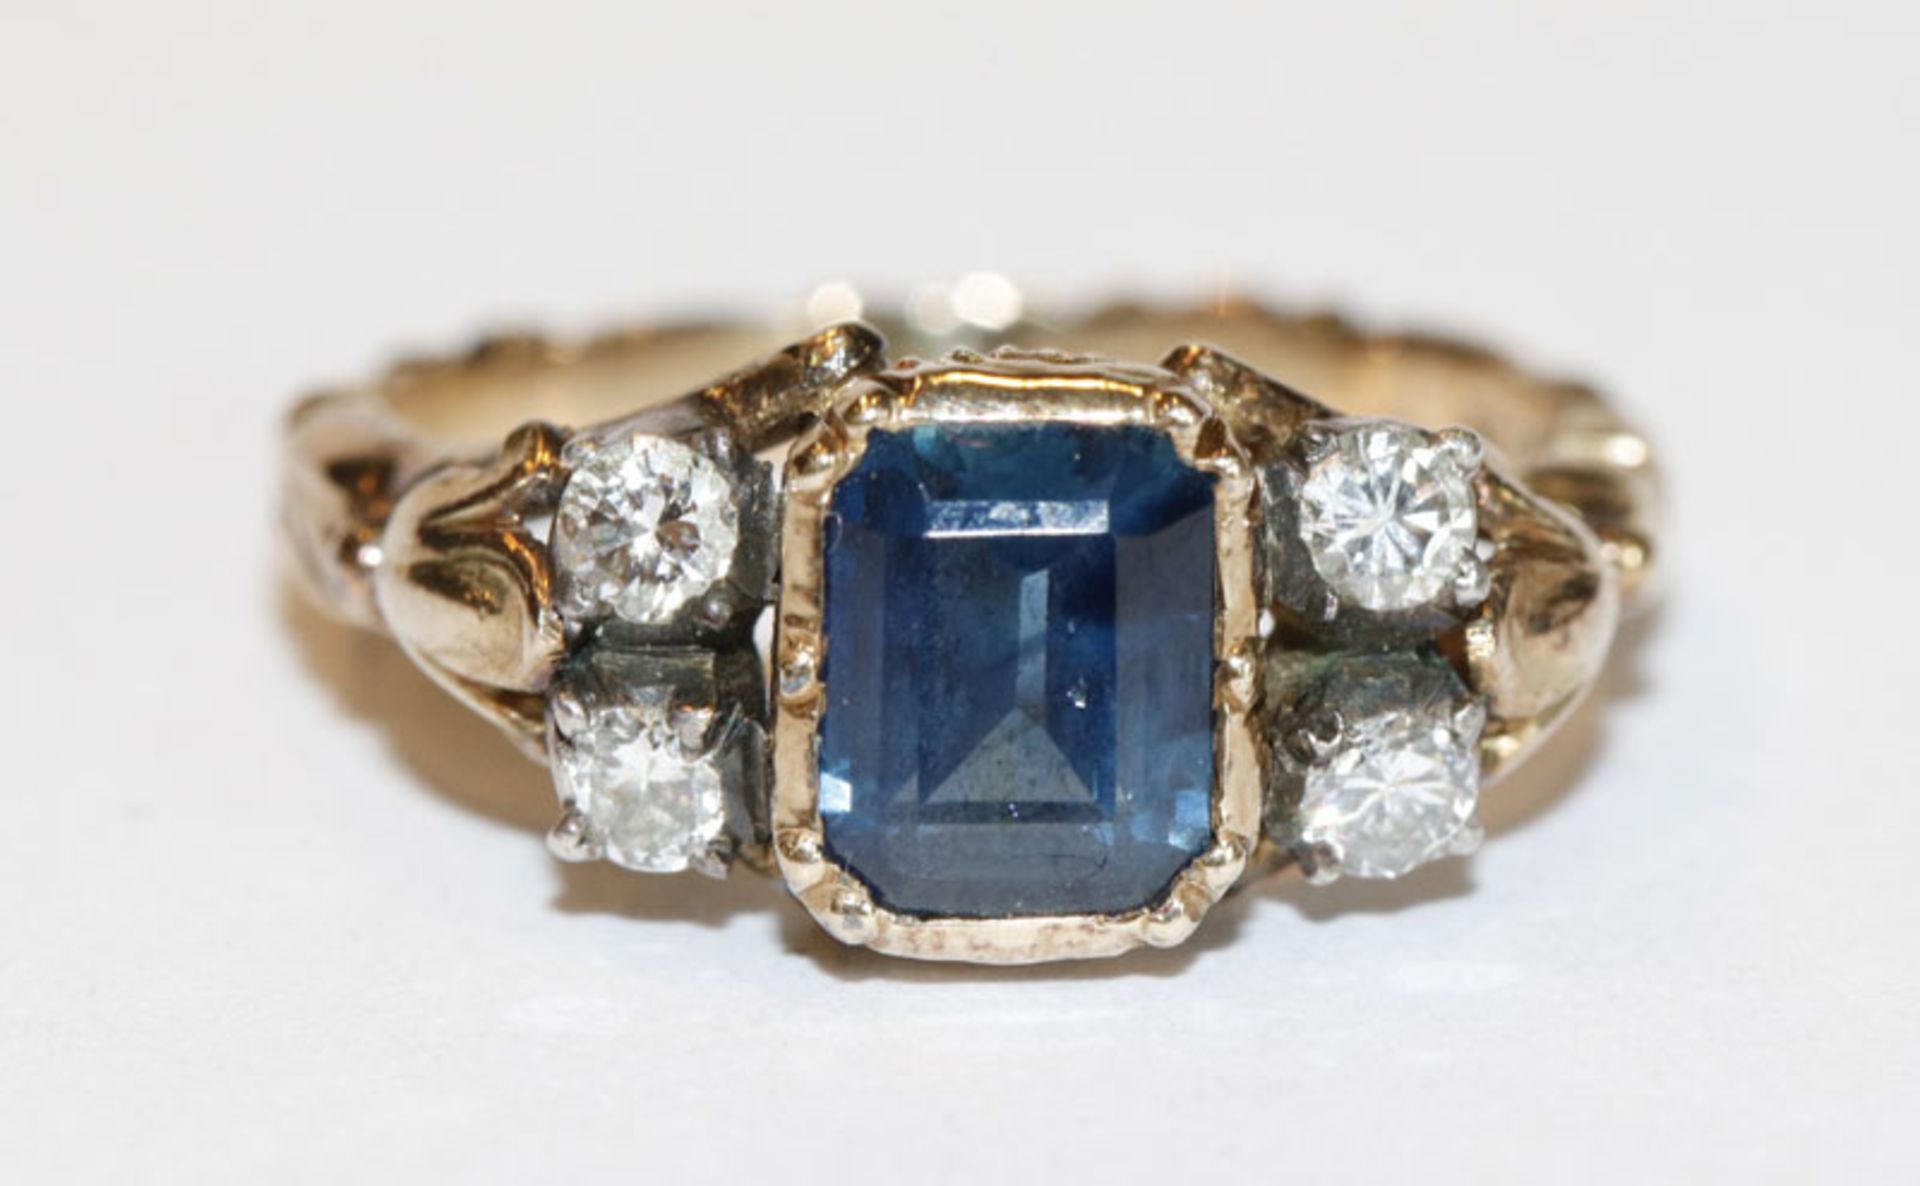 14 k Gelbgold/Silber Ring mit Burma Safir, 1,1 ct. und 4 Diamanten, zus. 0,30 ct., Gr. 55, schöne,